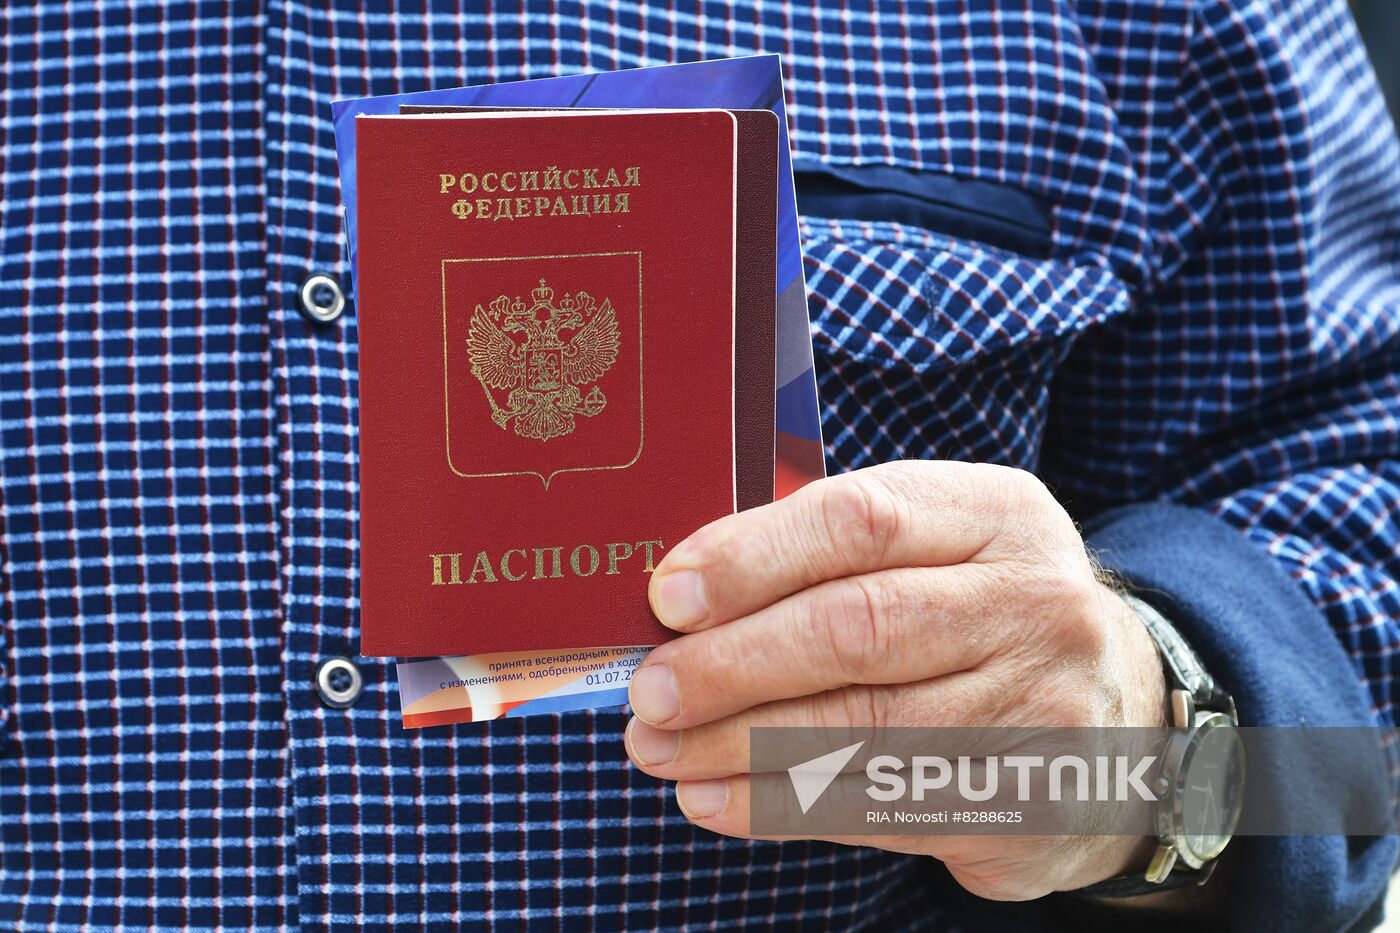 DPR Russia Ukraine Military Operation Passports